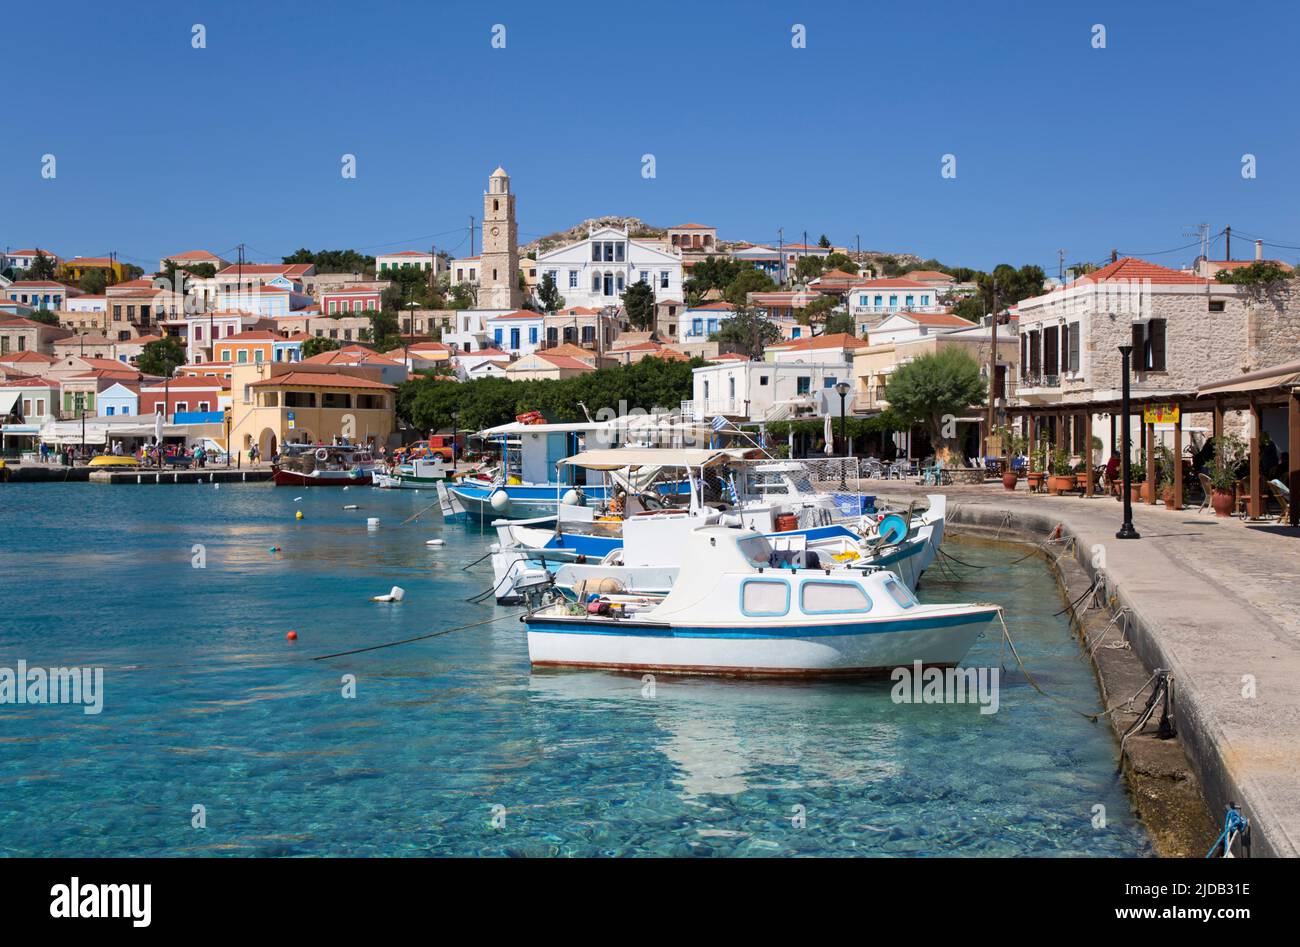 Bâtiments traditionnels et bateaux de pêche le long du front de mer dans le port d'Emborio, la ville principale sur l'île de Halki (Chalki) Banque D'Images